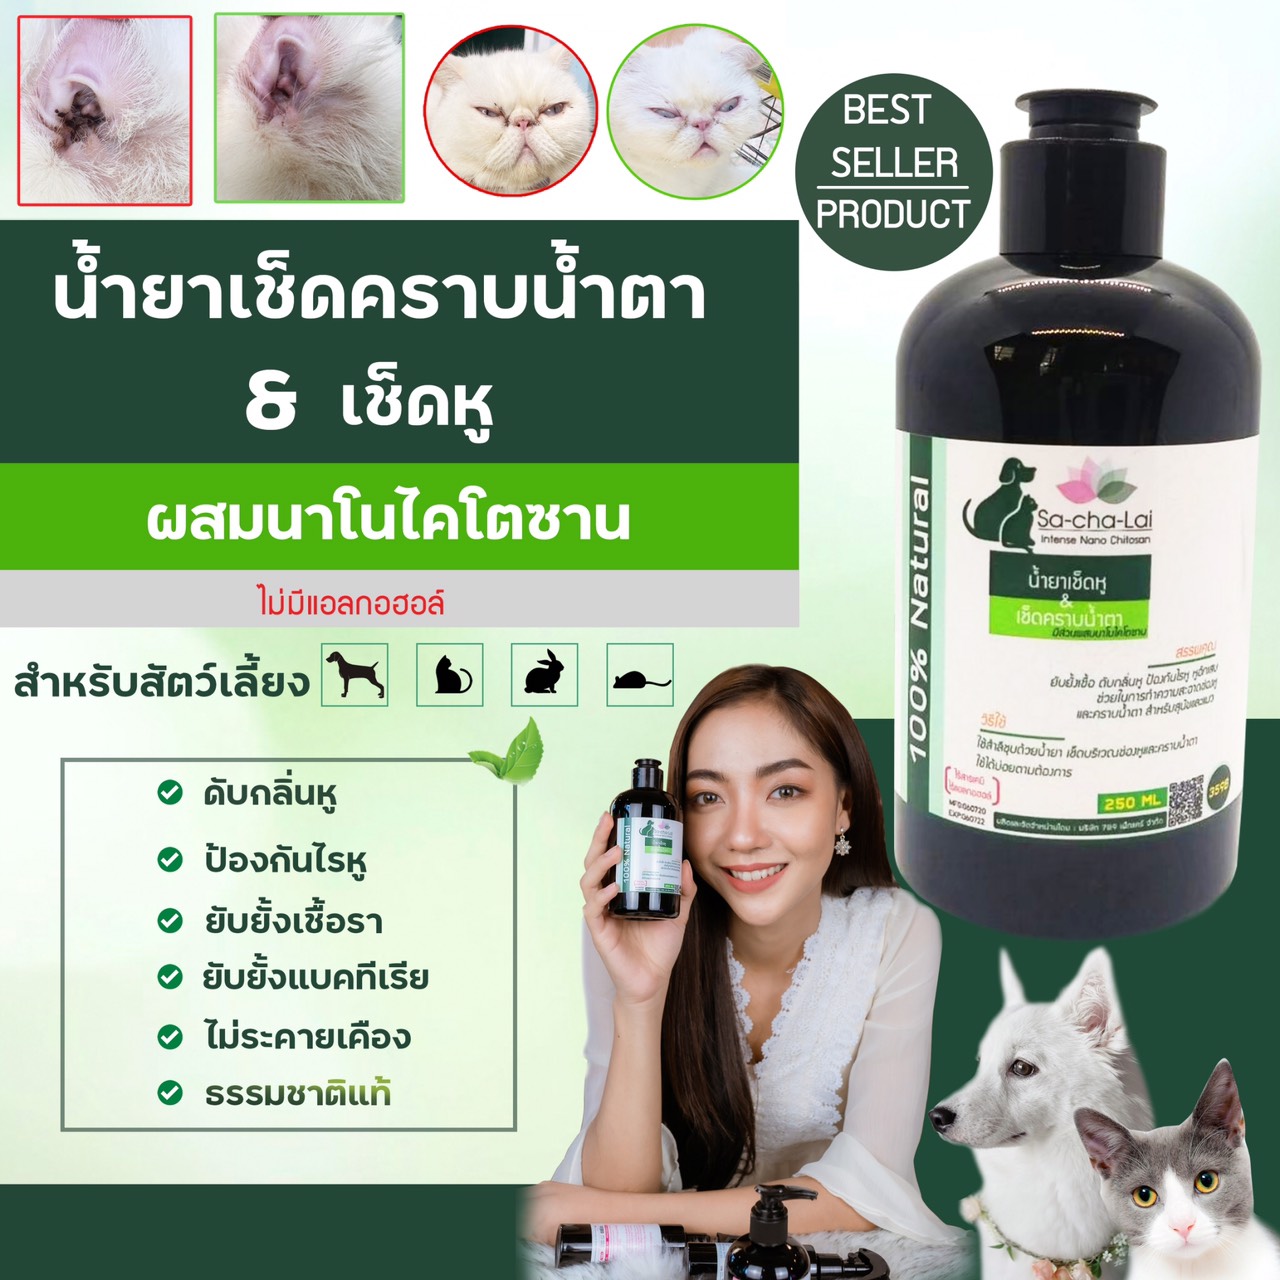 Sa-Cha-Lai น้ำยาเช็ดคราบน้ำตา & เช็ดหู ที่ปลอดภัย ไร้สารเคมี ไม่มีแอลกอฮอล์ ขนาด 60 มล.